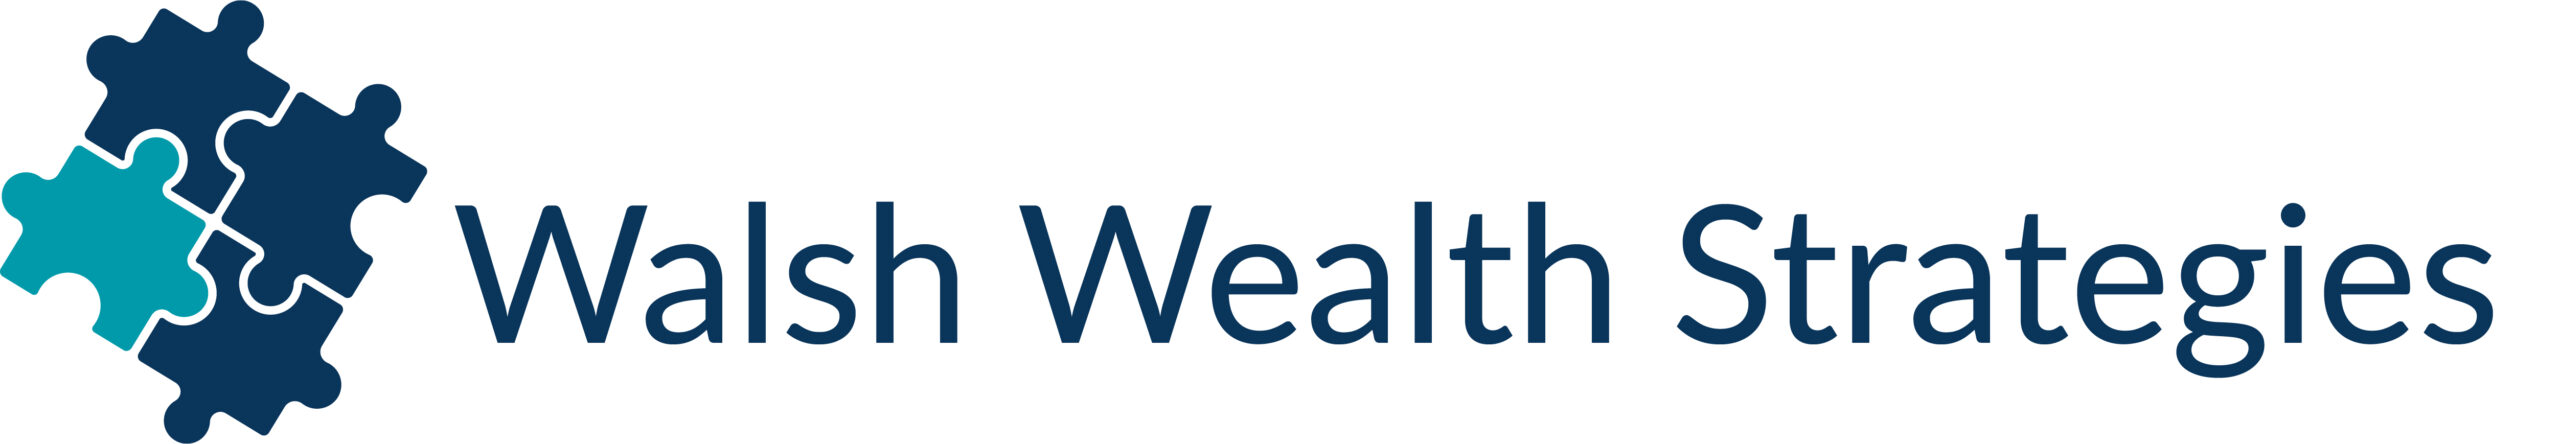 Walsh Wealth Strategies